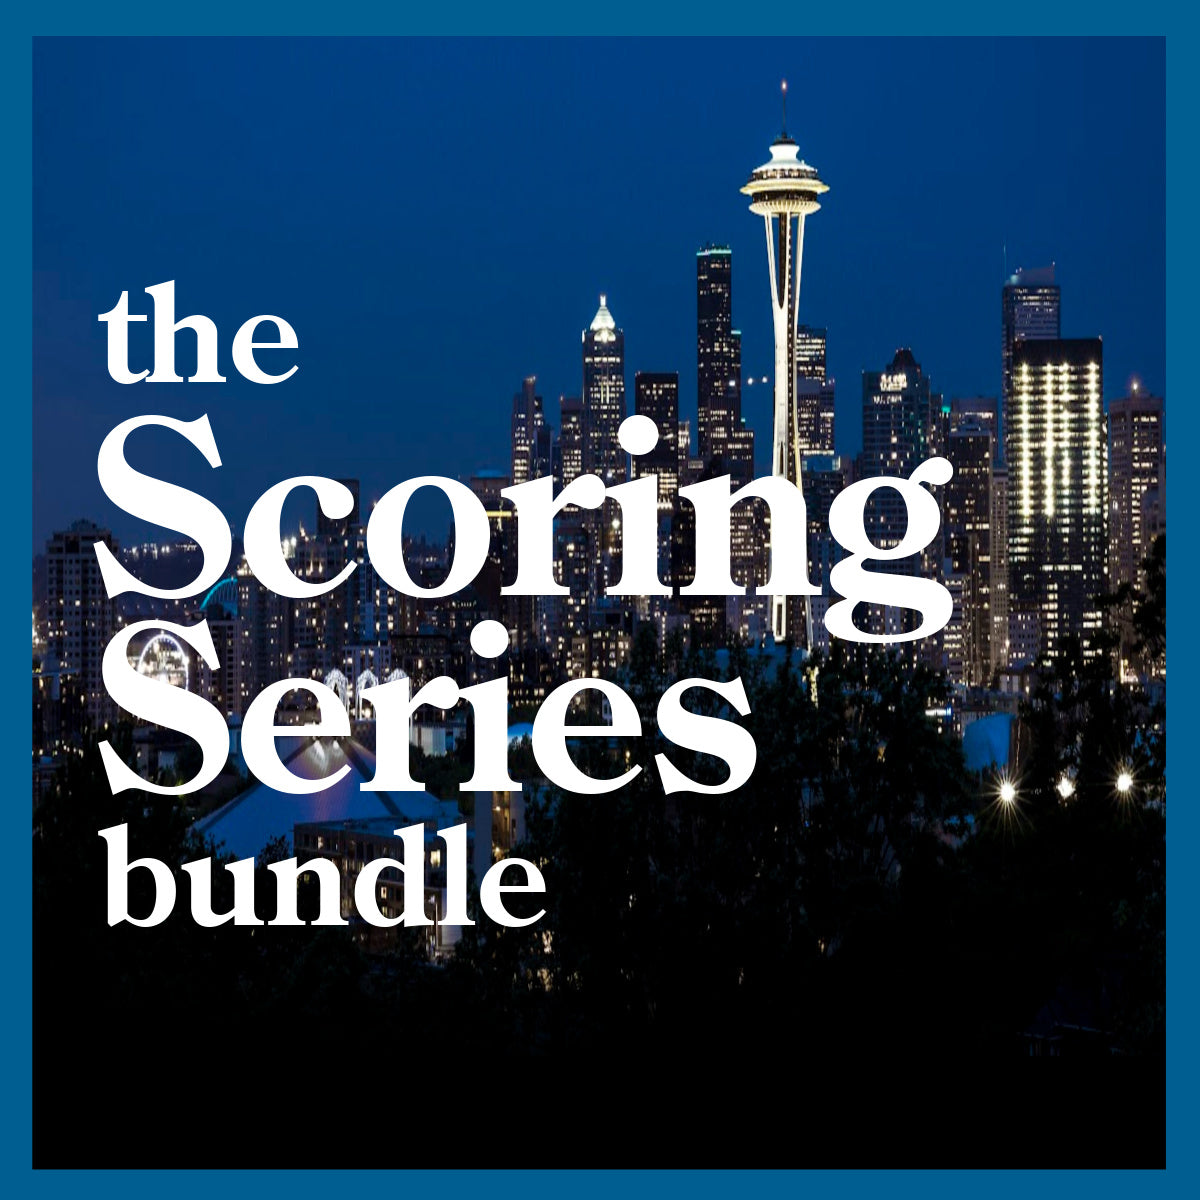 The Scoring Series Bundle